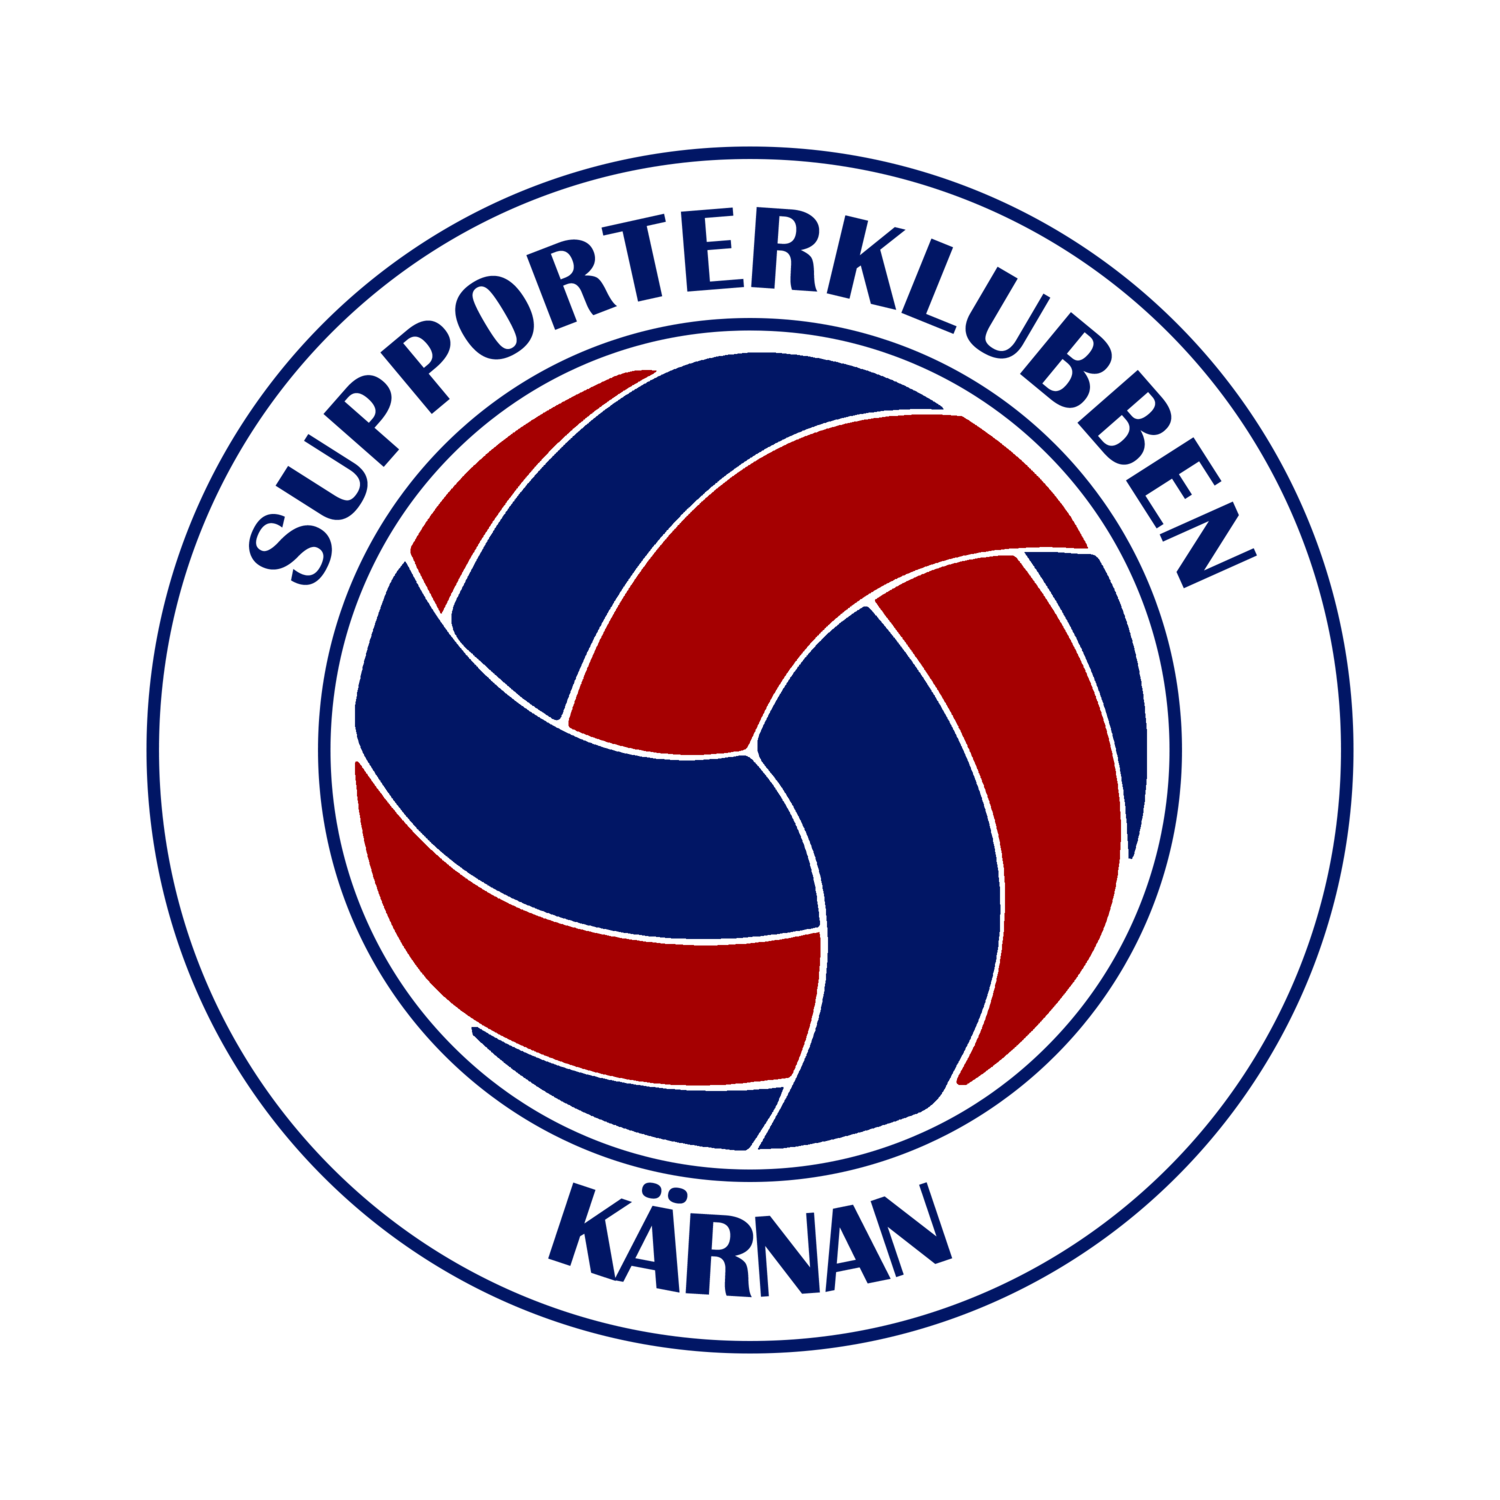 Supporterklubben Kärnan | Officiell supporterförening för Helsingborgs IF